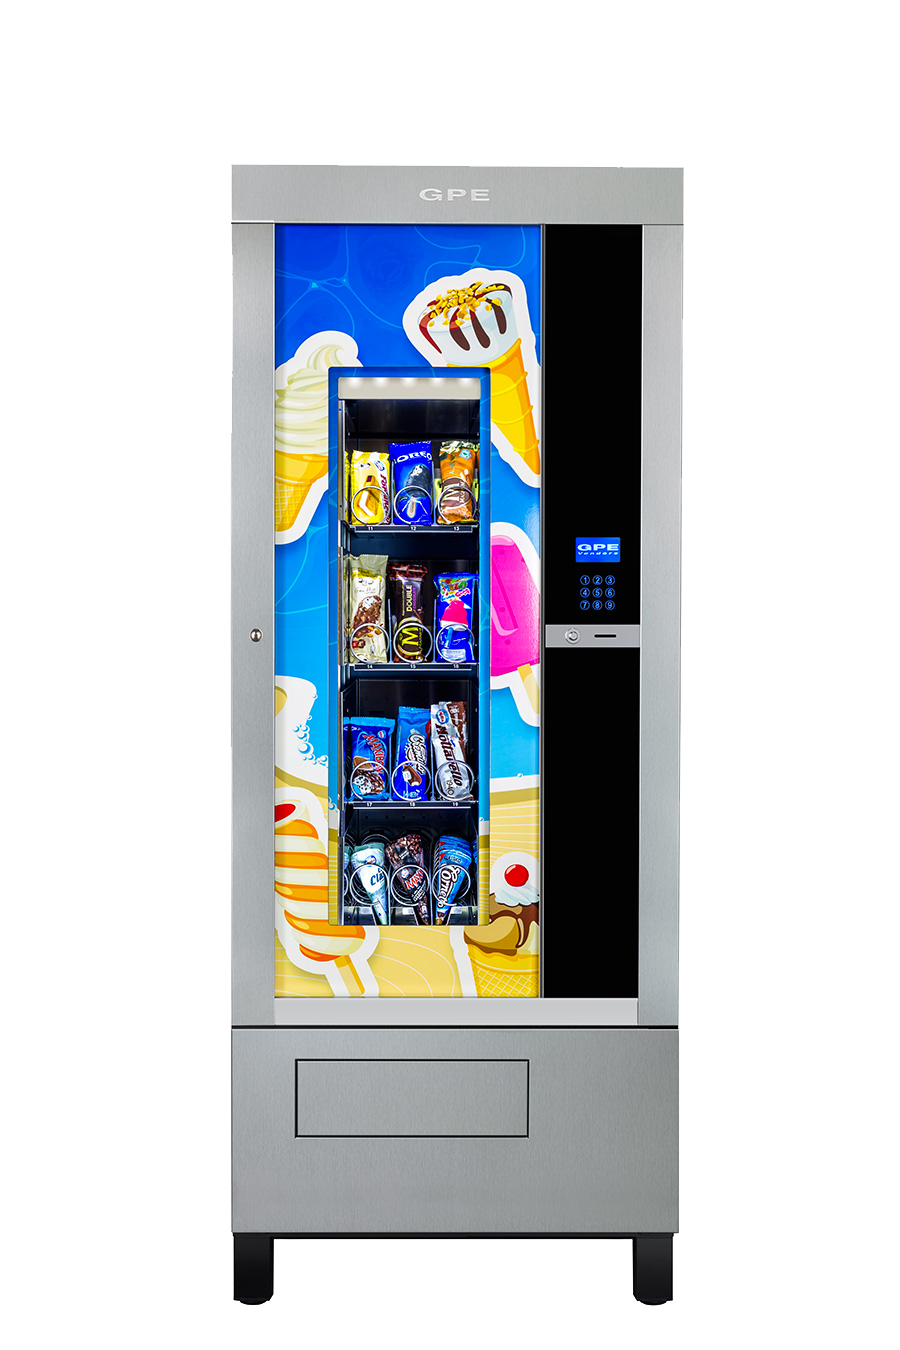 Distributore automatico Gpe Frozen eccellente per vendita surgelati adatto per i negozi h24